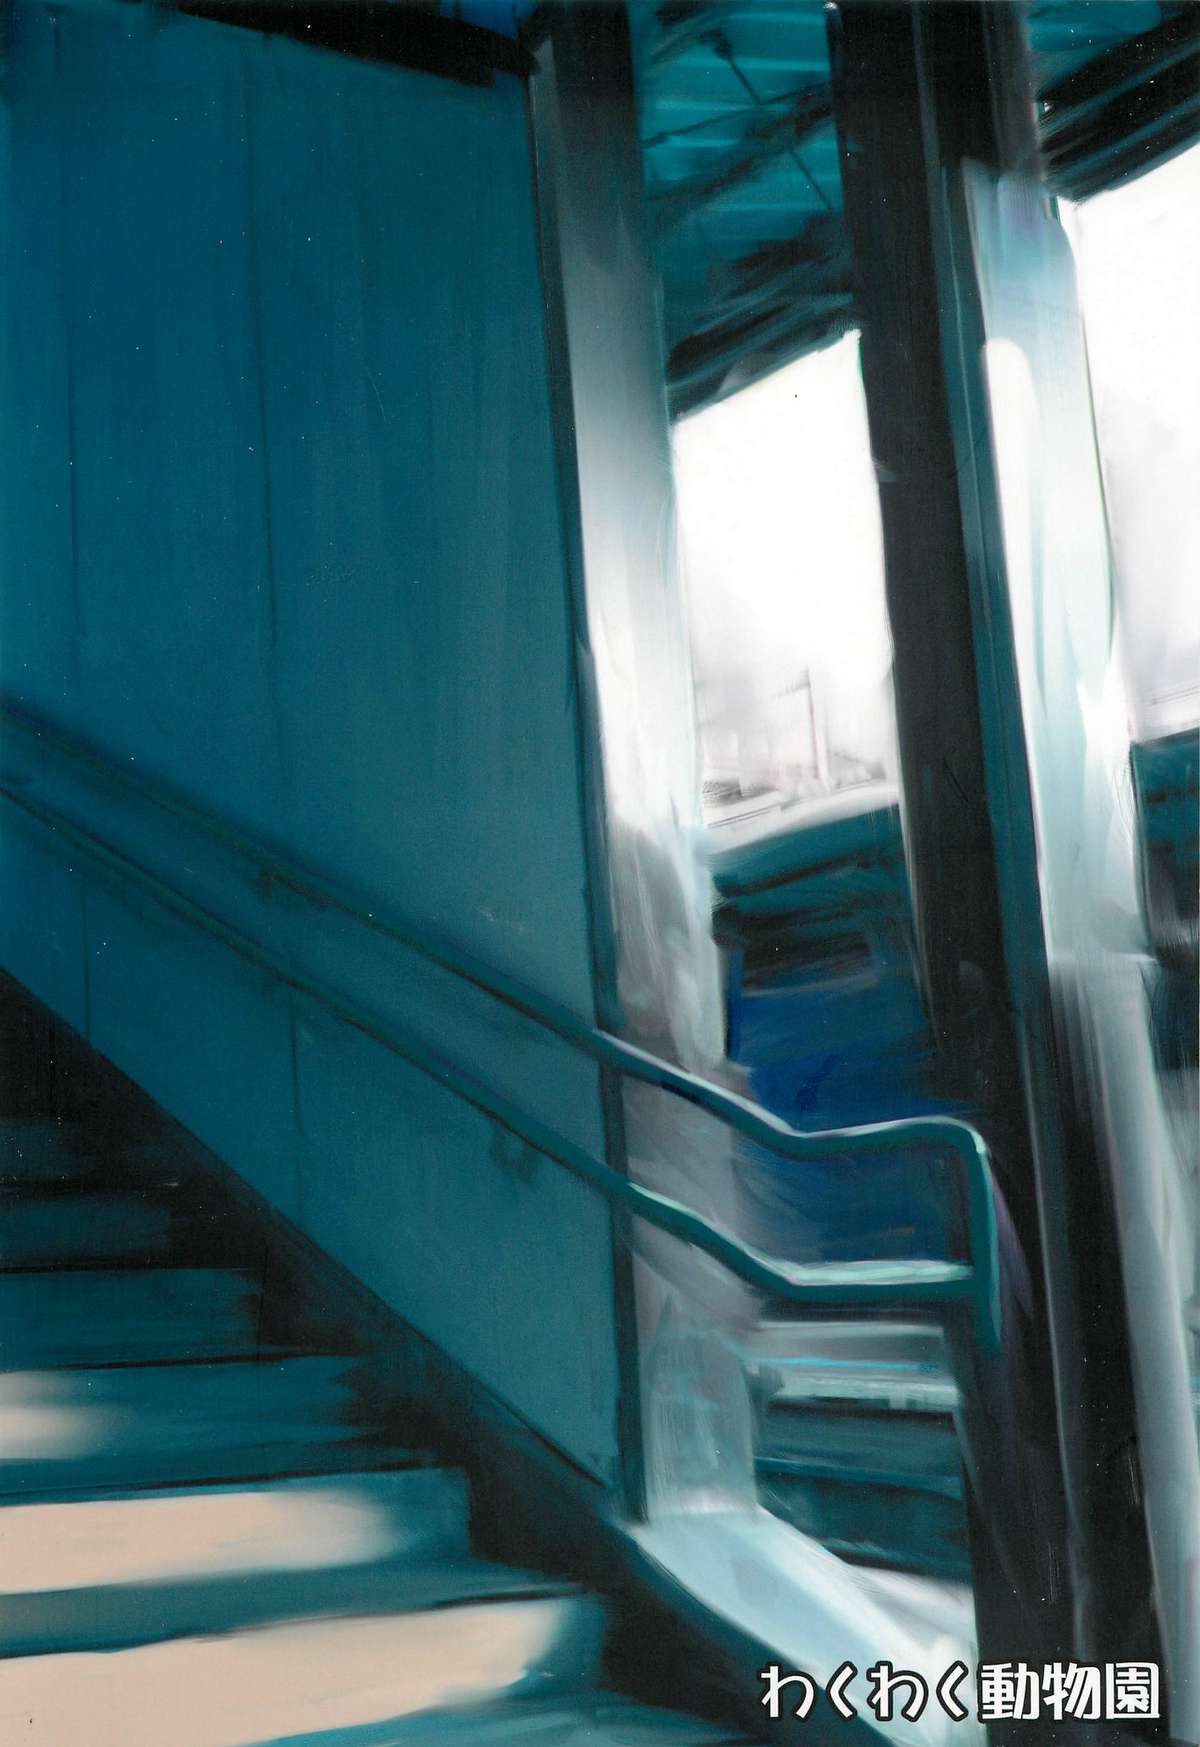 (C74) [わくわく動物園 (天王寺きつね)] blue snow blue 総集編2 scene.4～scene.6